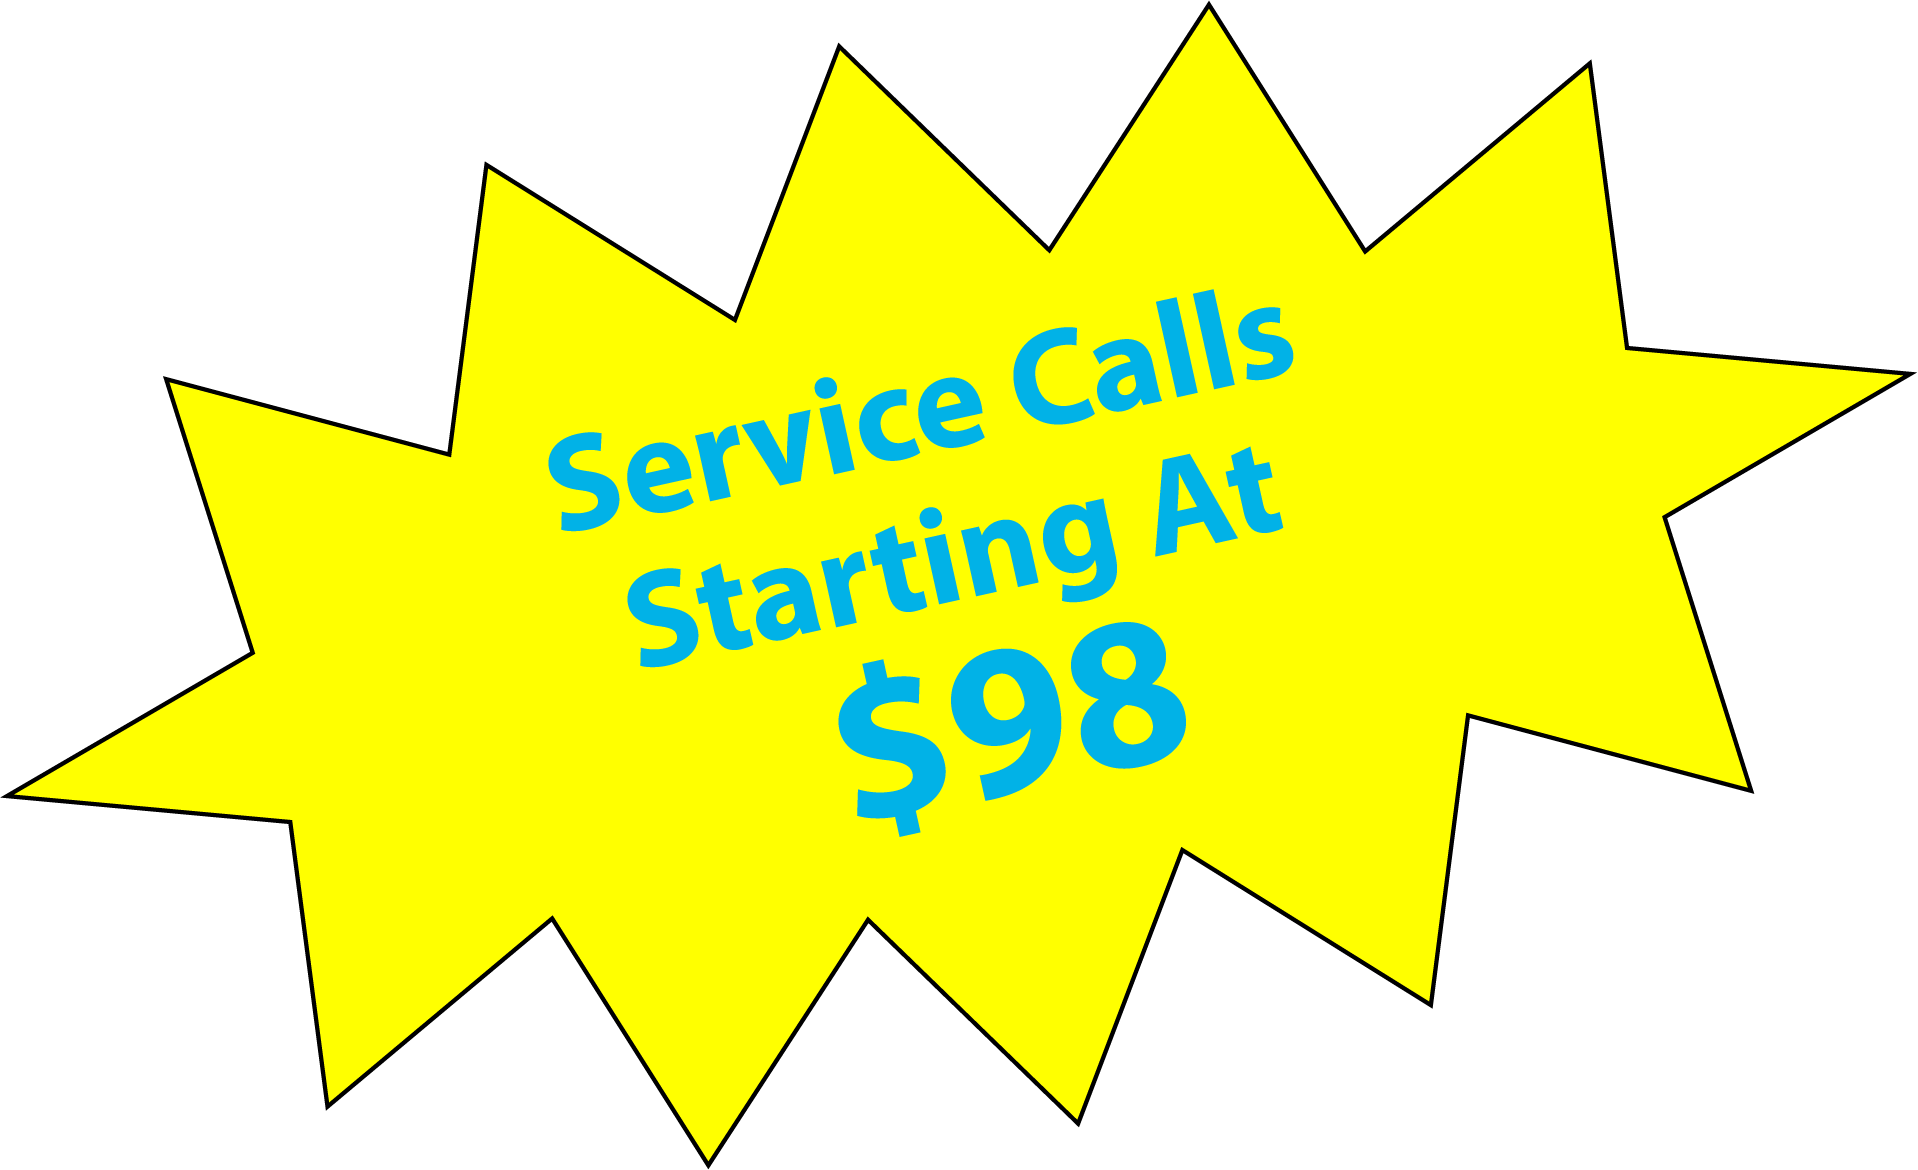 service calls starting at $98